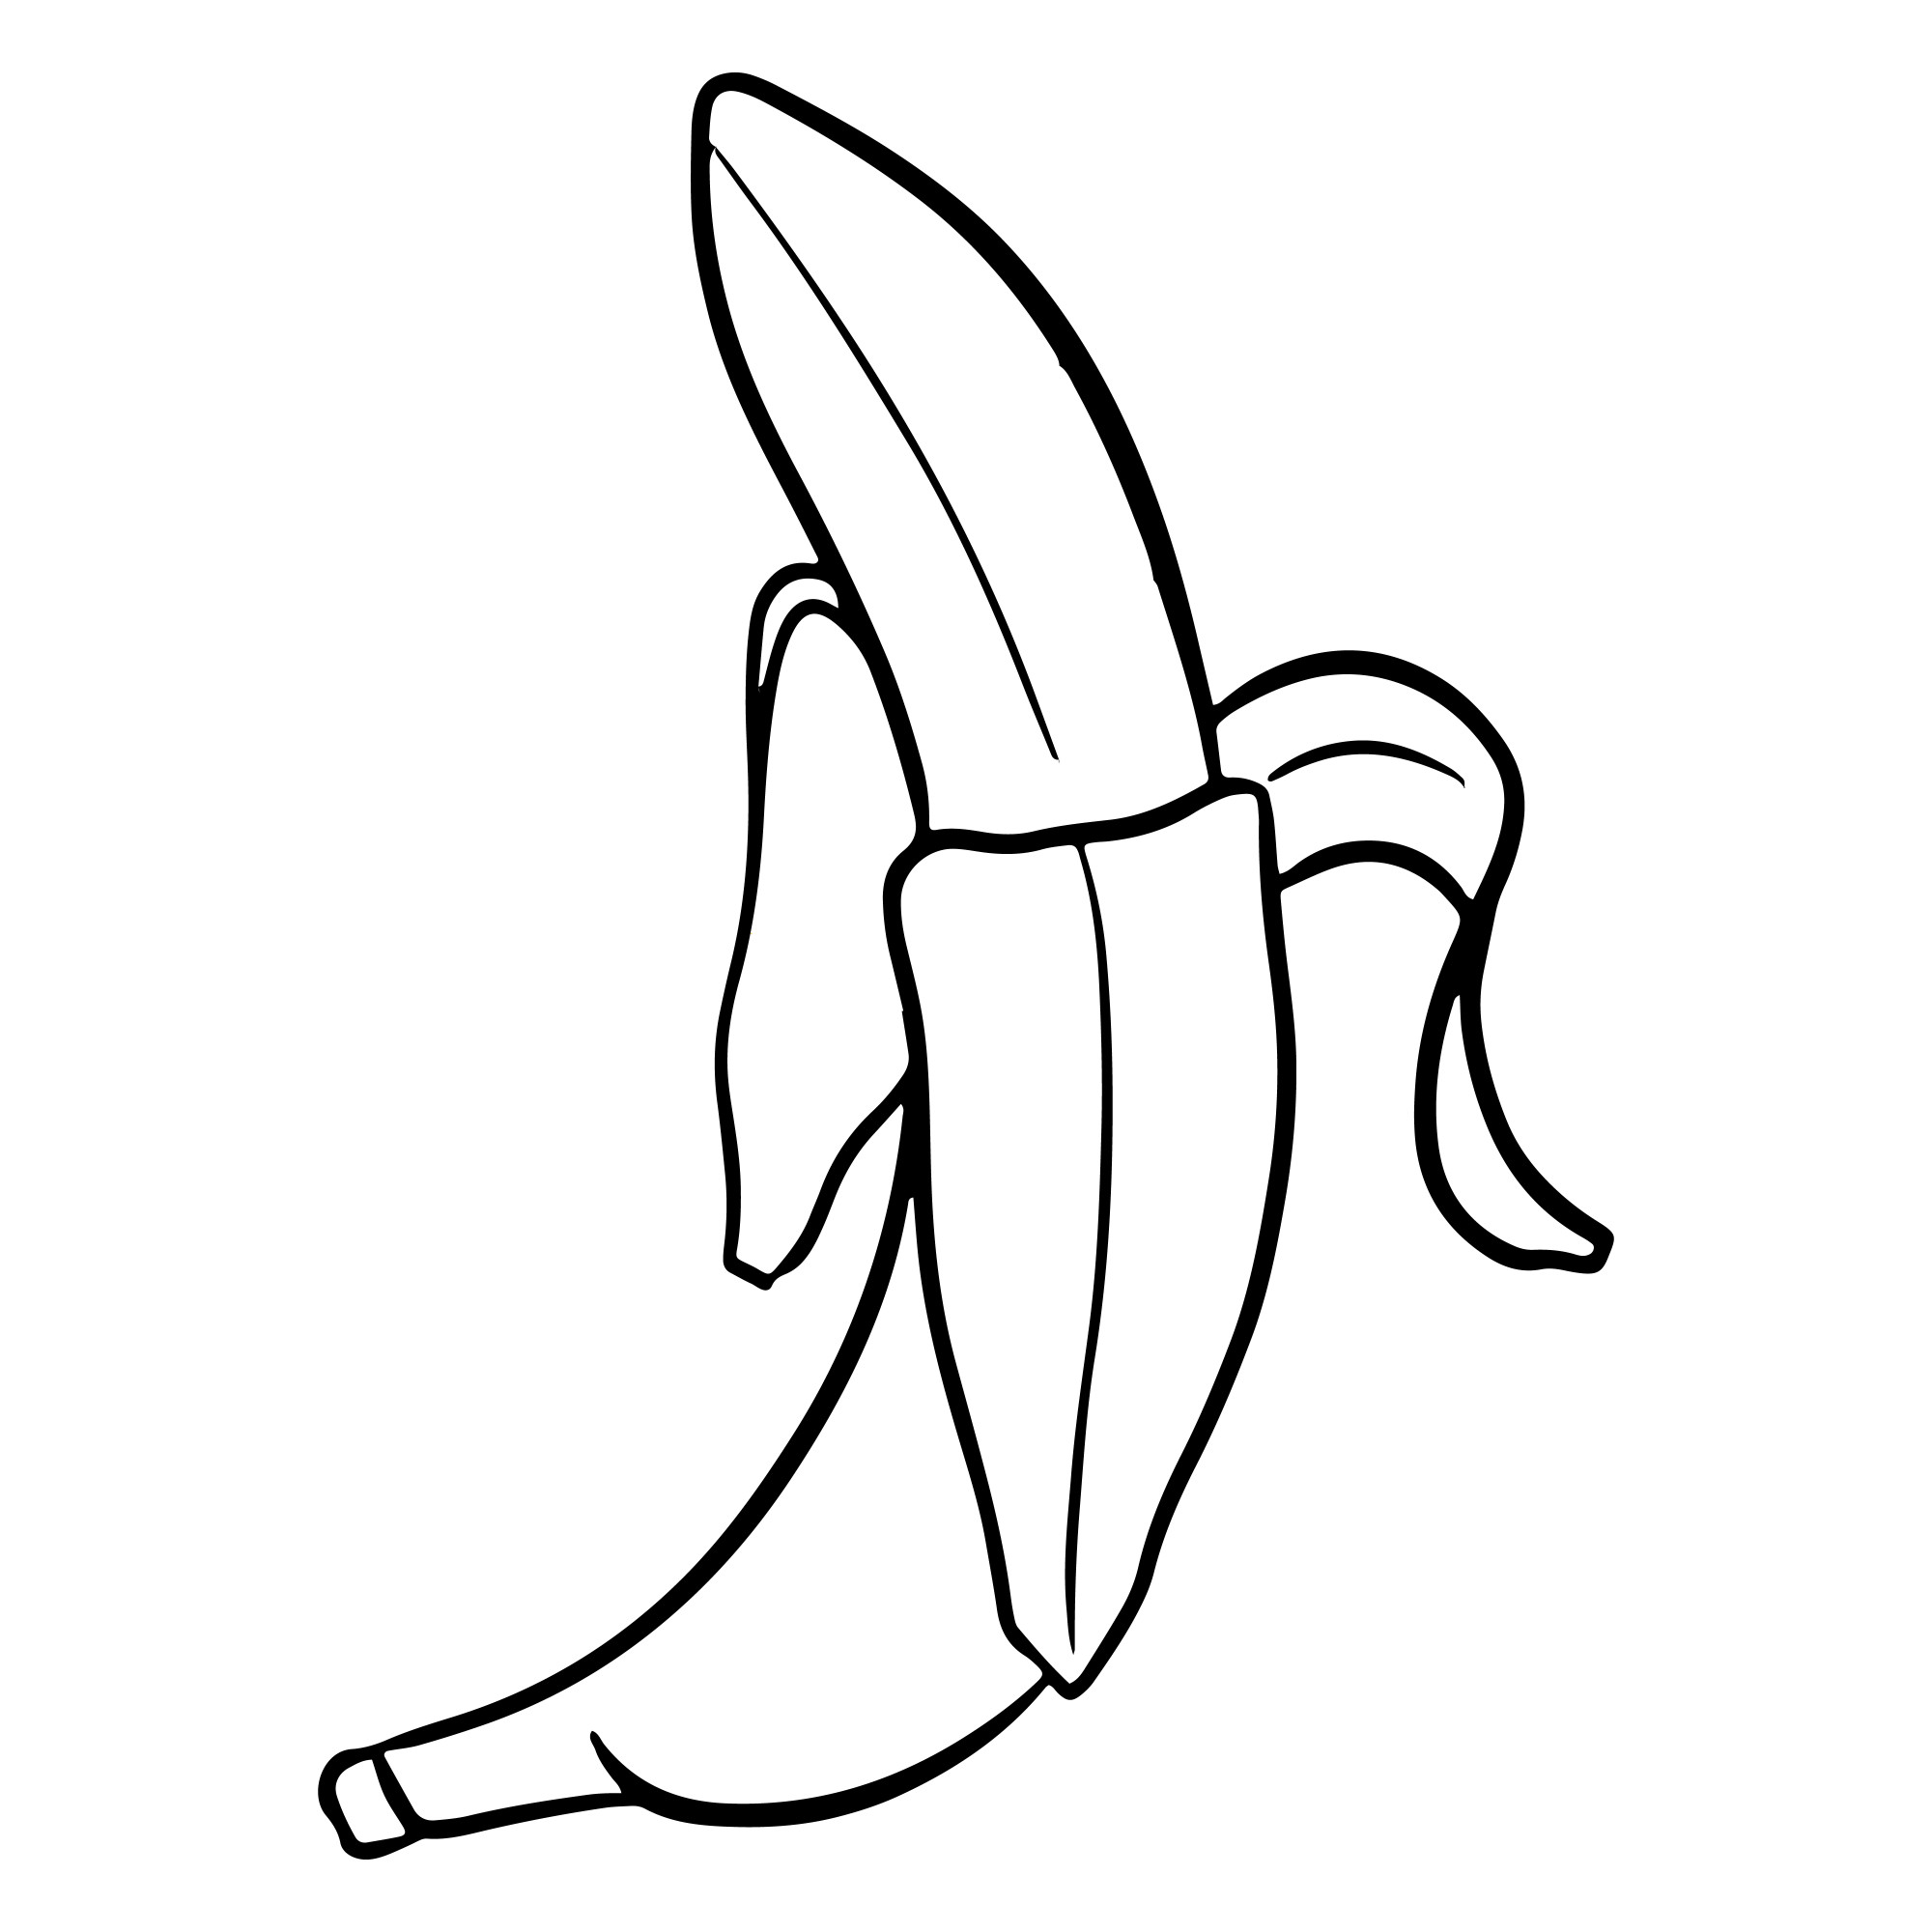 Раскраска для детей: банан с кожурой